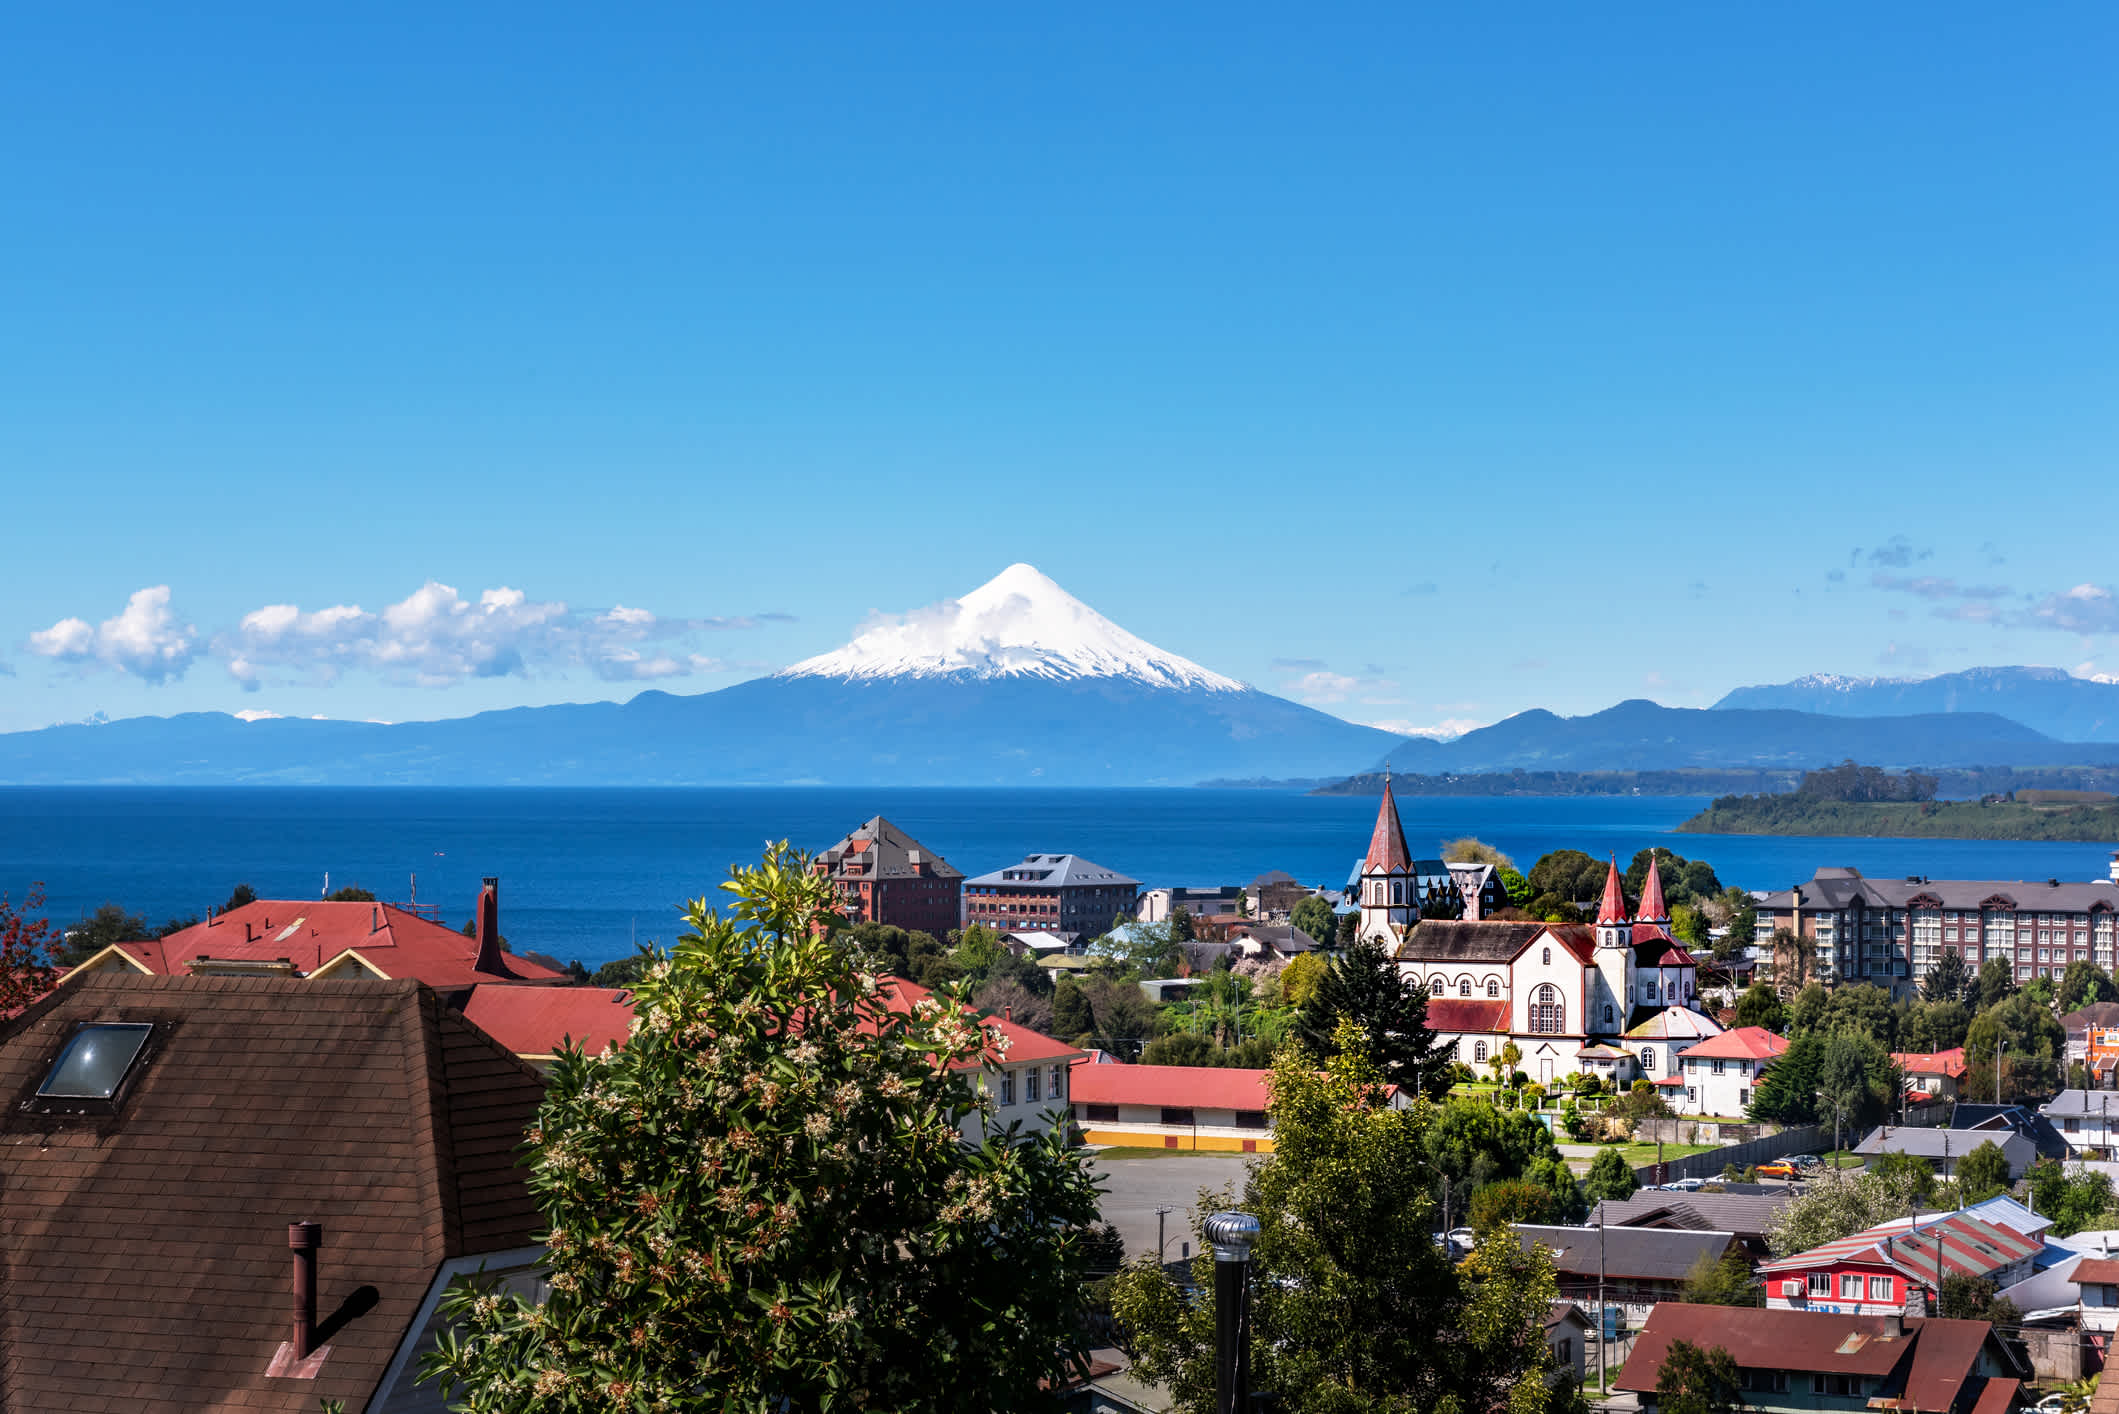 Vue sur la ville de Puerto Varas dans la région des lacs chiliens